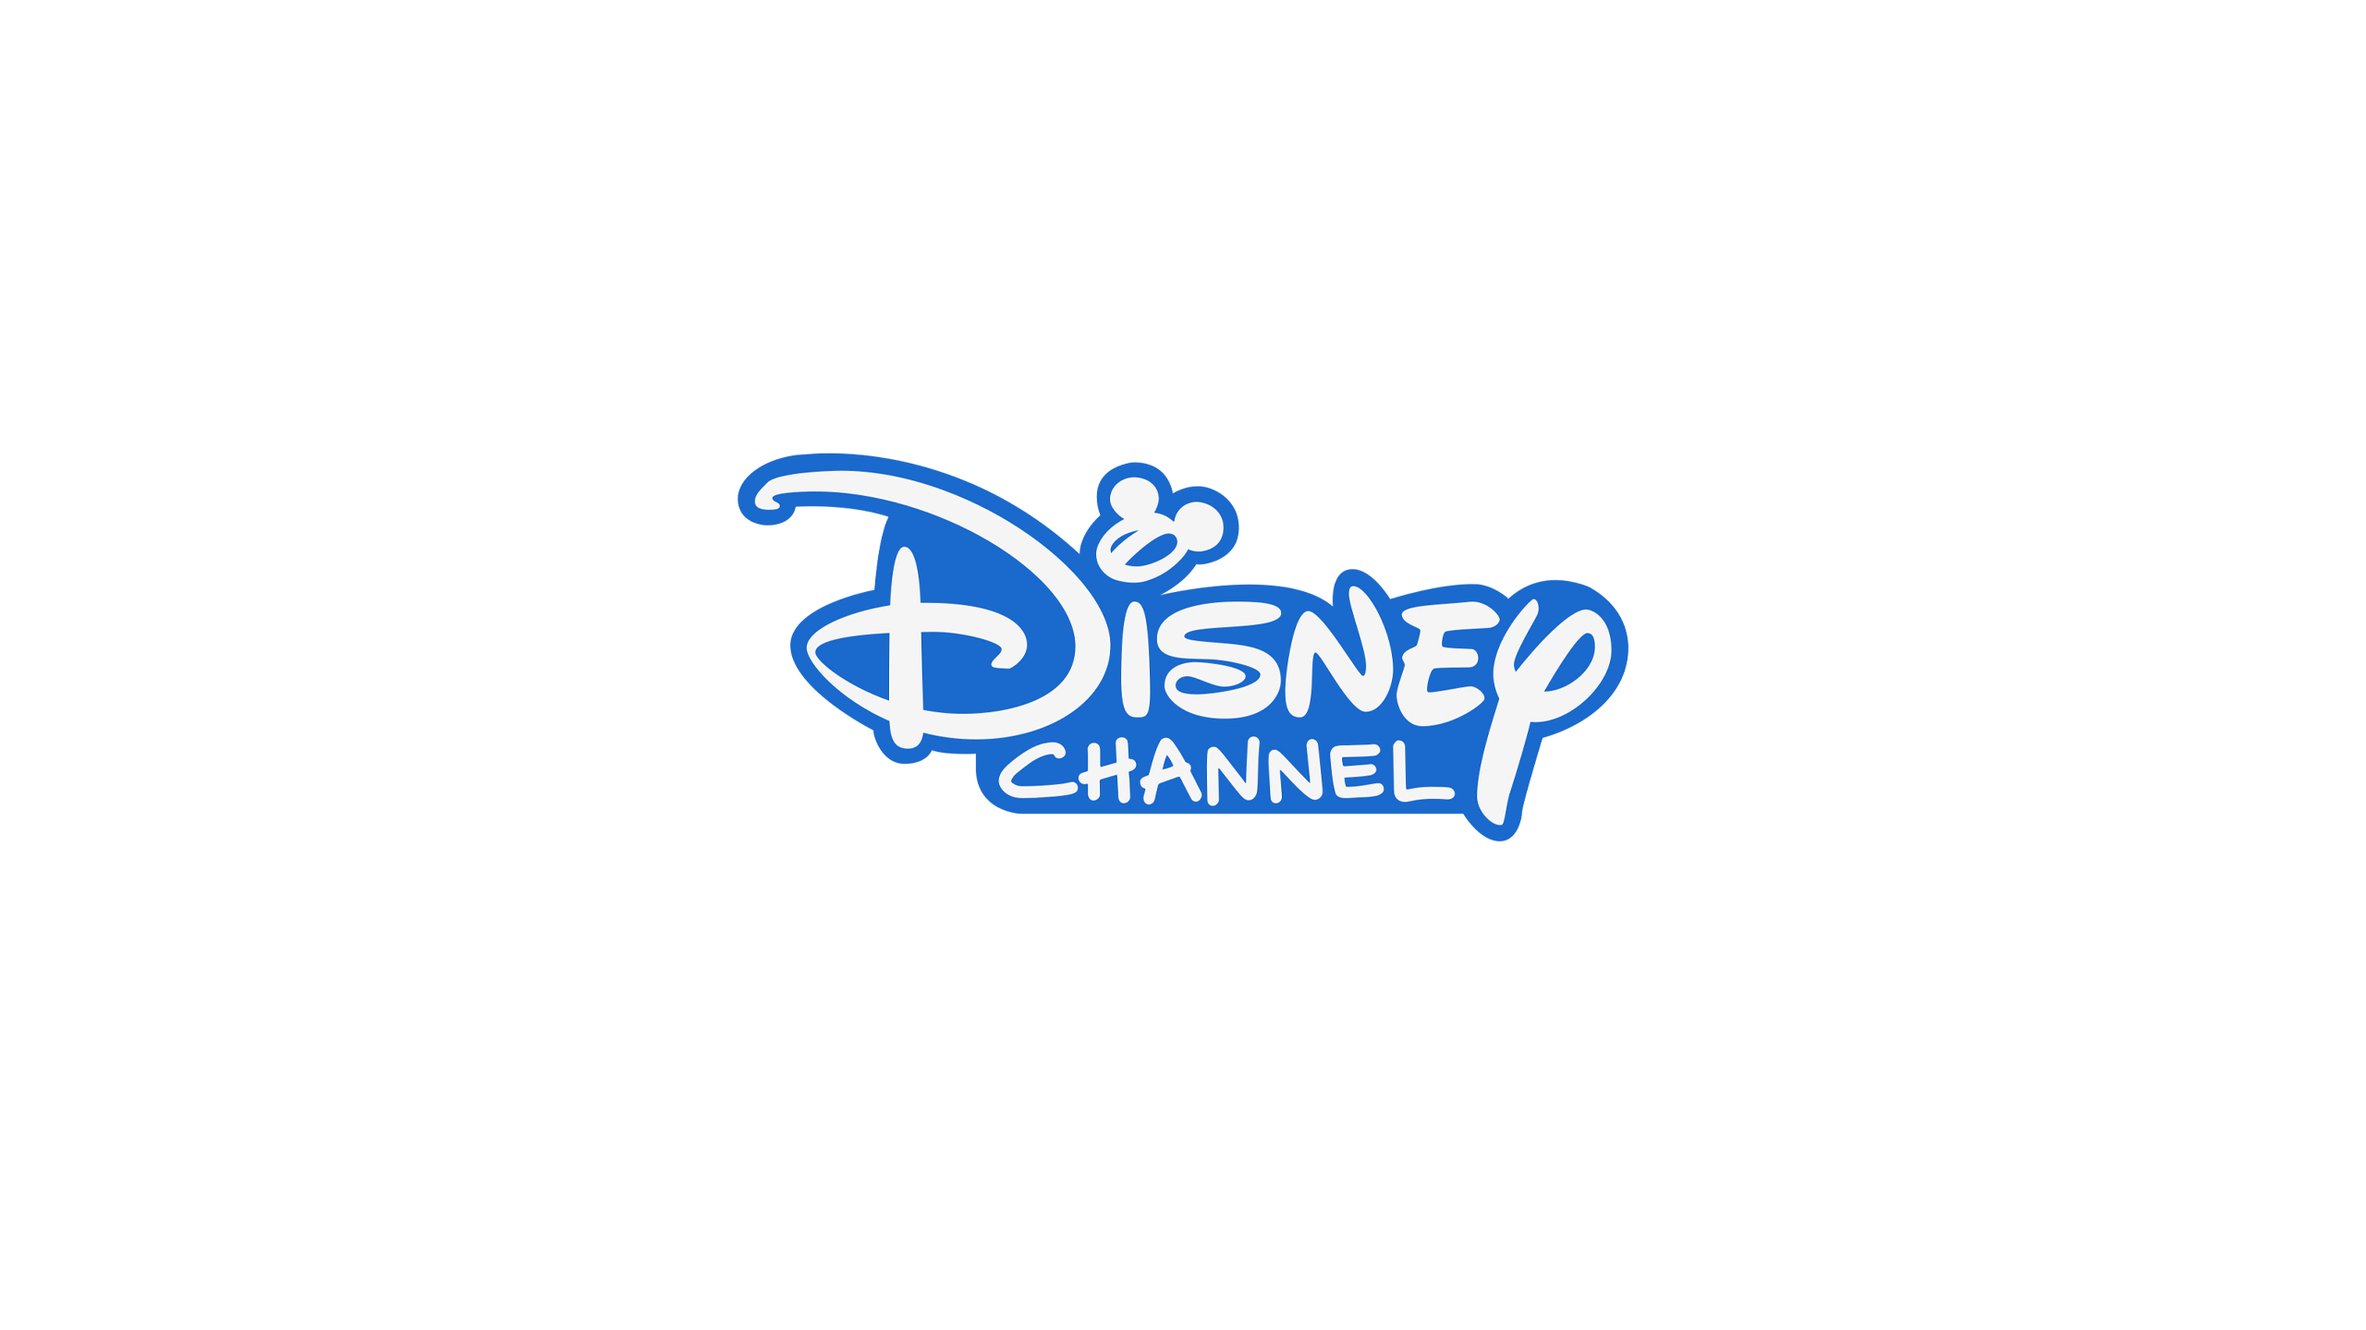 Disney TV Series Seeking Talent